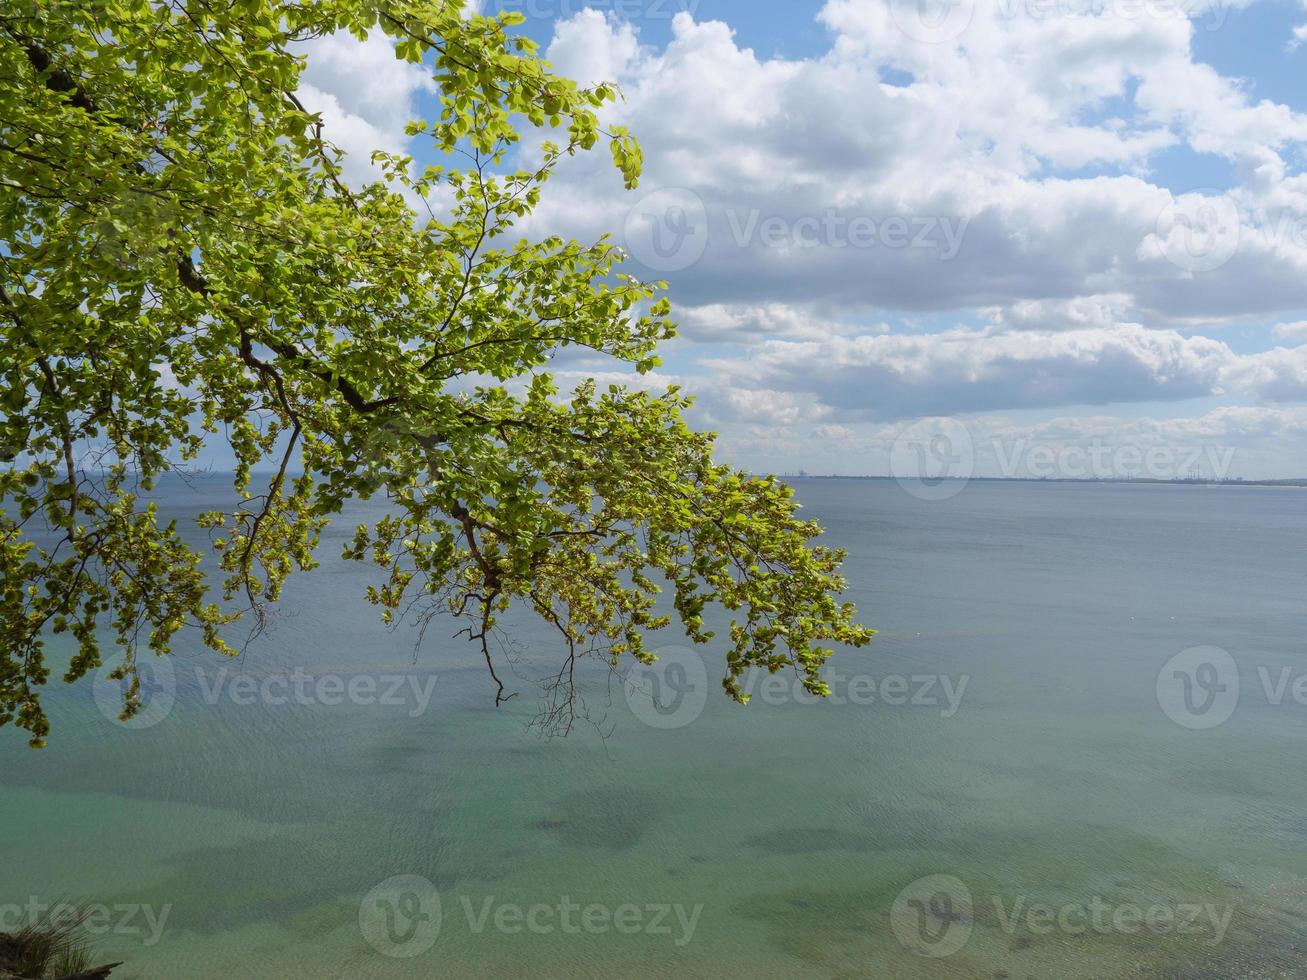 plage de la mer baltique en pologne photo